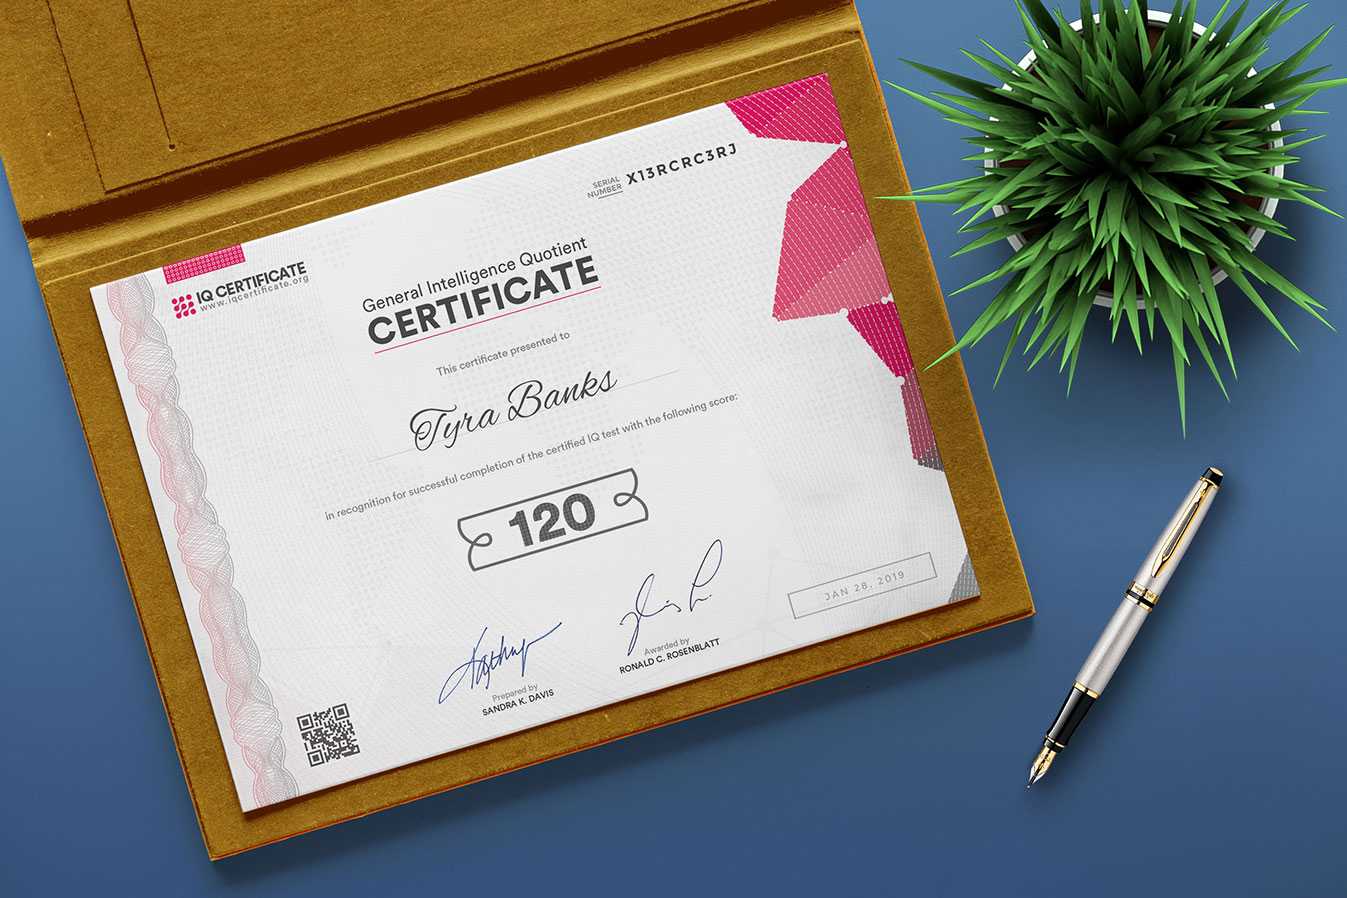 Sample Iq Certificate - Get Your Iq Certificate! Inside Iq Certificate Template